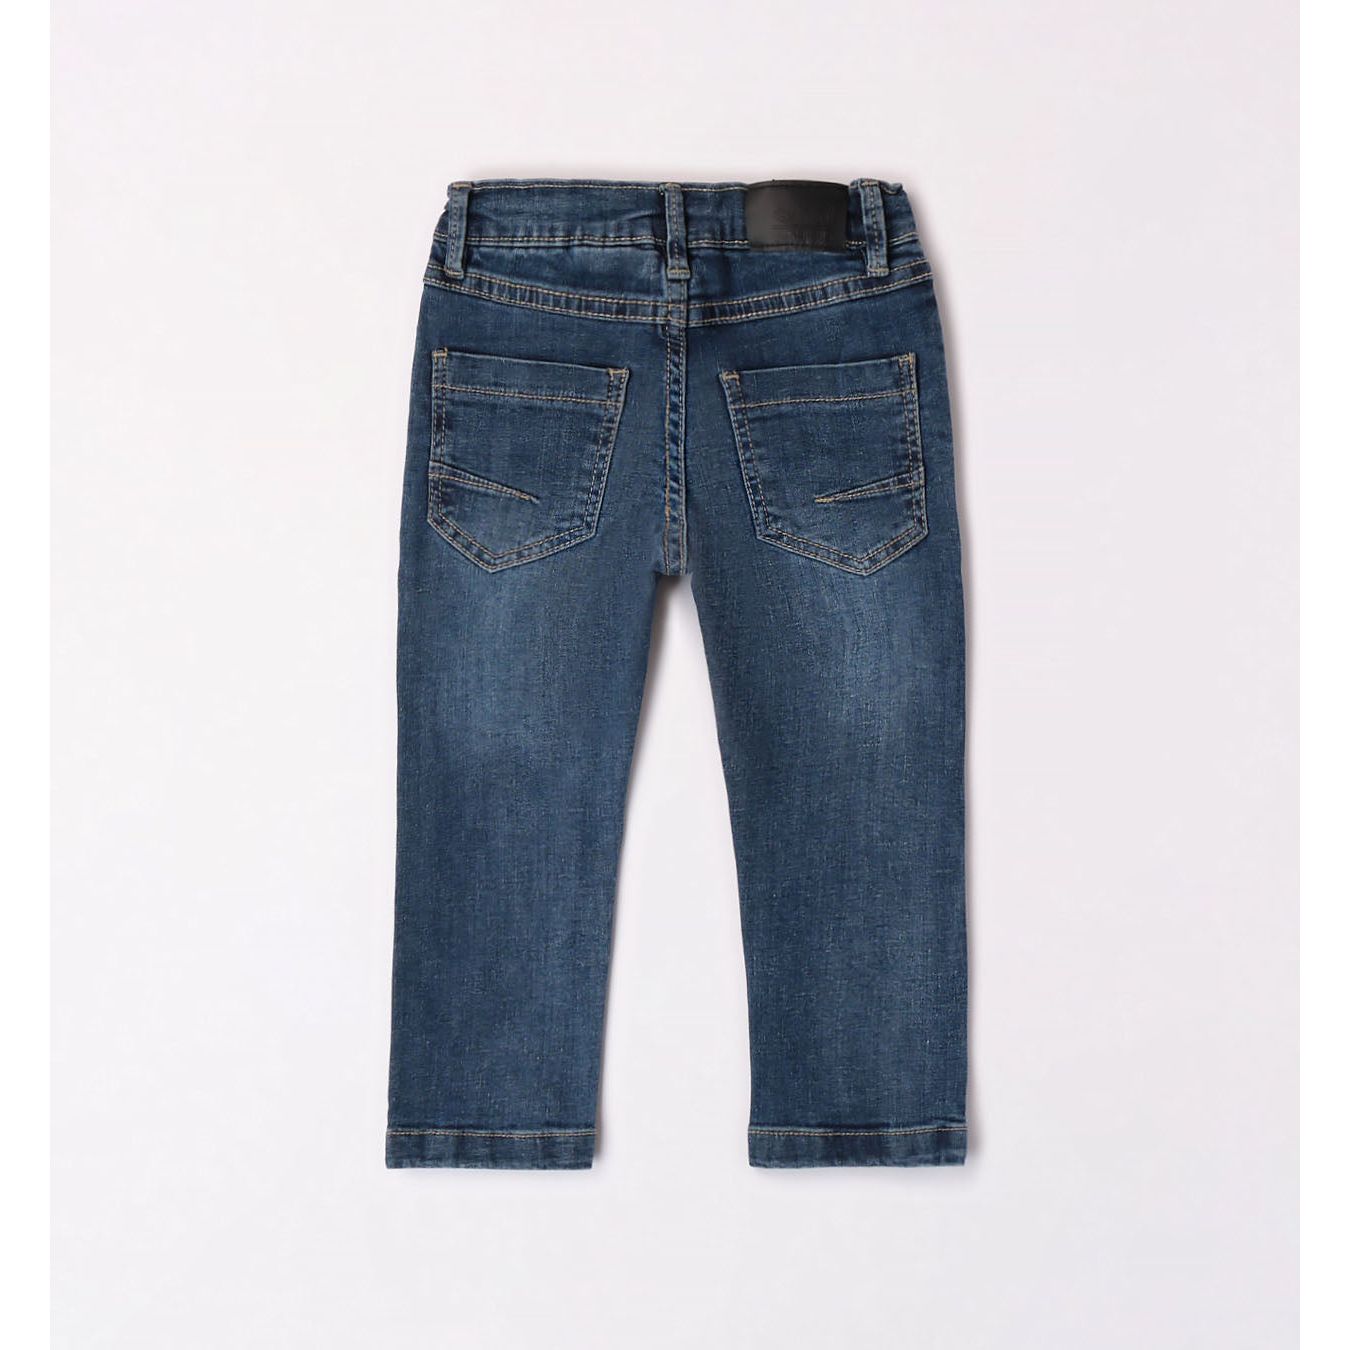 Stonewashed Denim Jeans 3265 - Lala Kids 